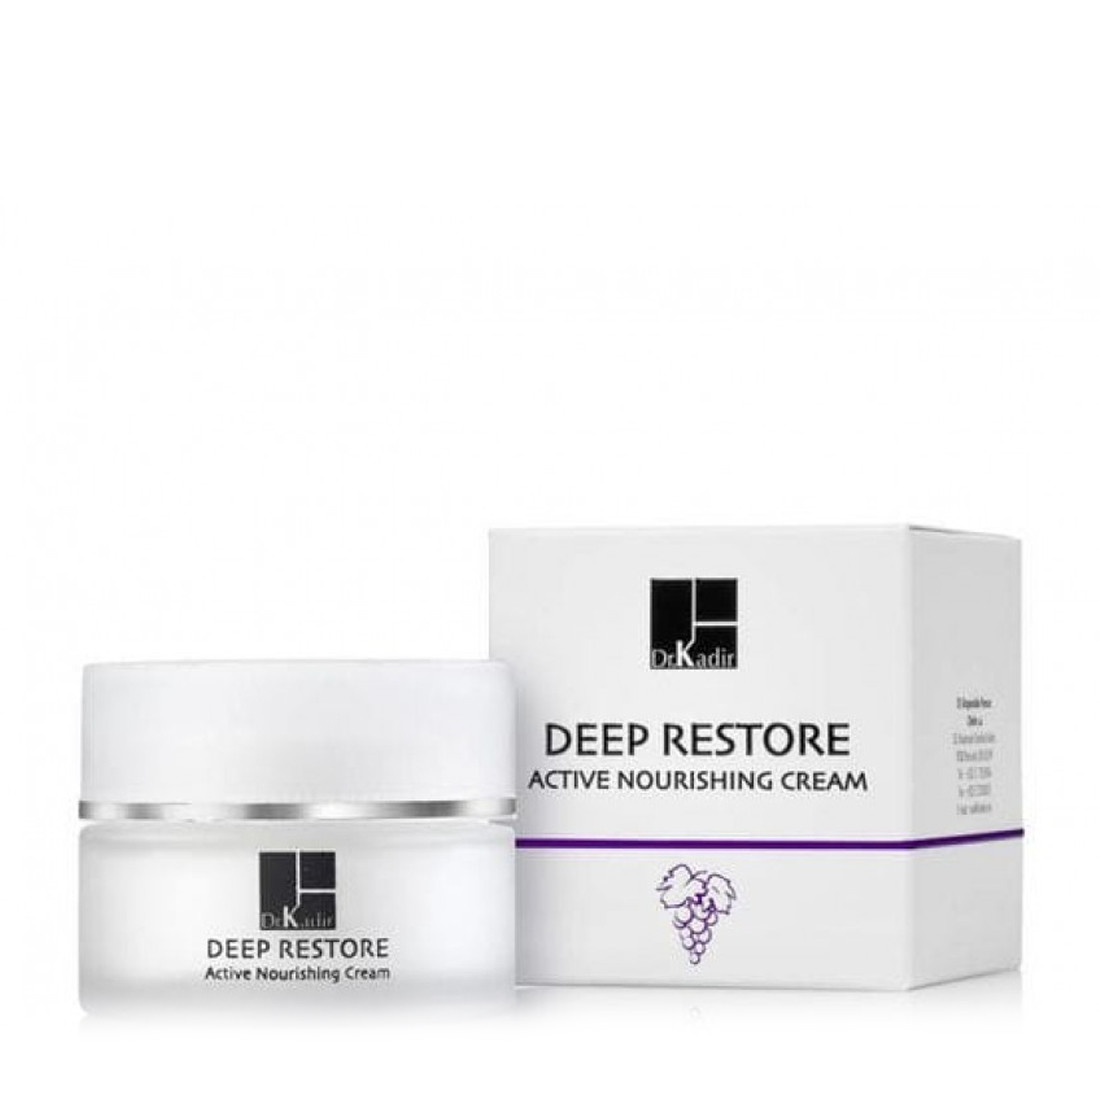 Dr. Kadir Deep Restore Active Nourishing Cream - Питательный крем для лица/борьба с пигментацией